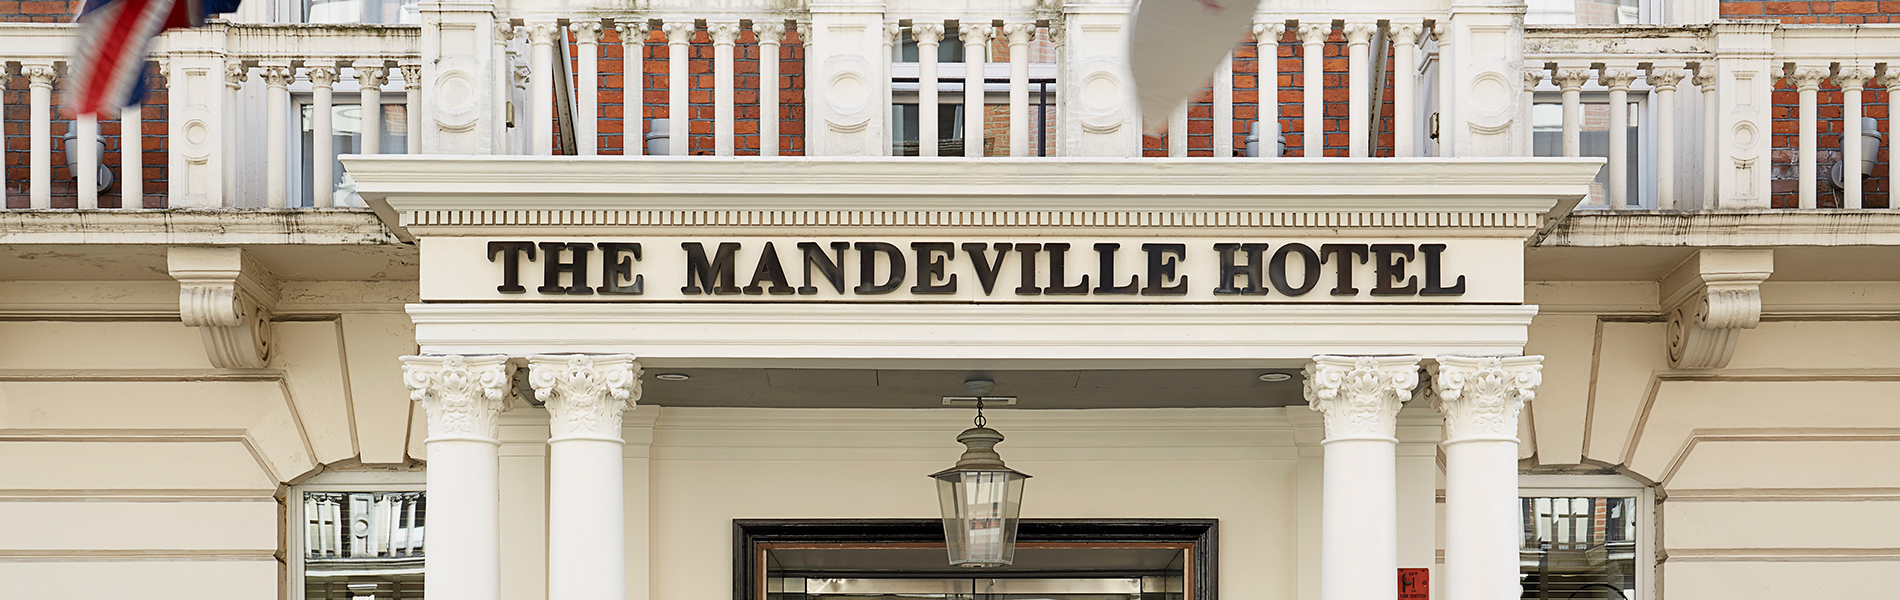 The Mandeville Hotel Signage